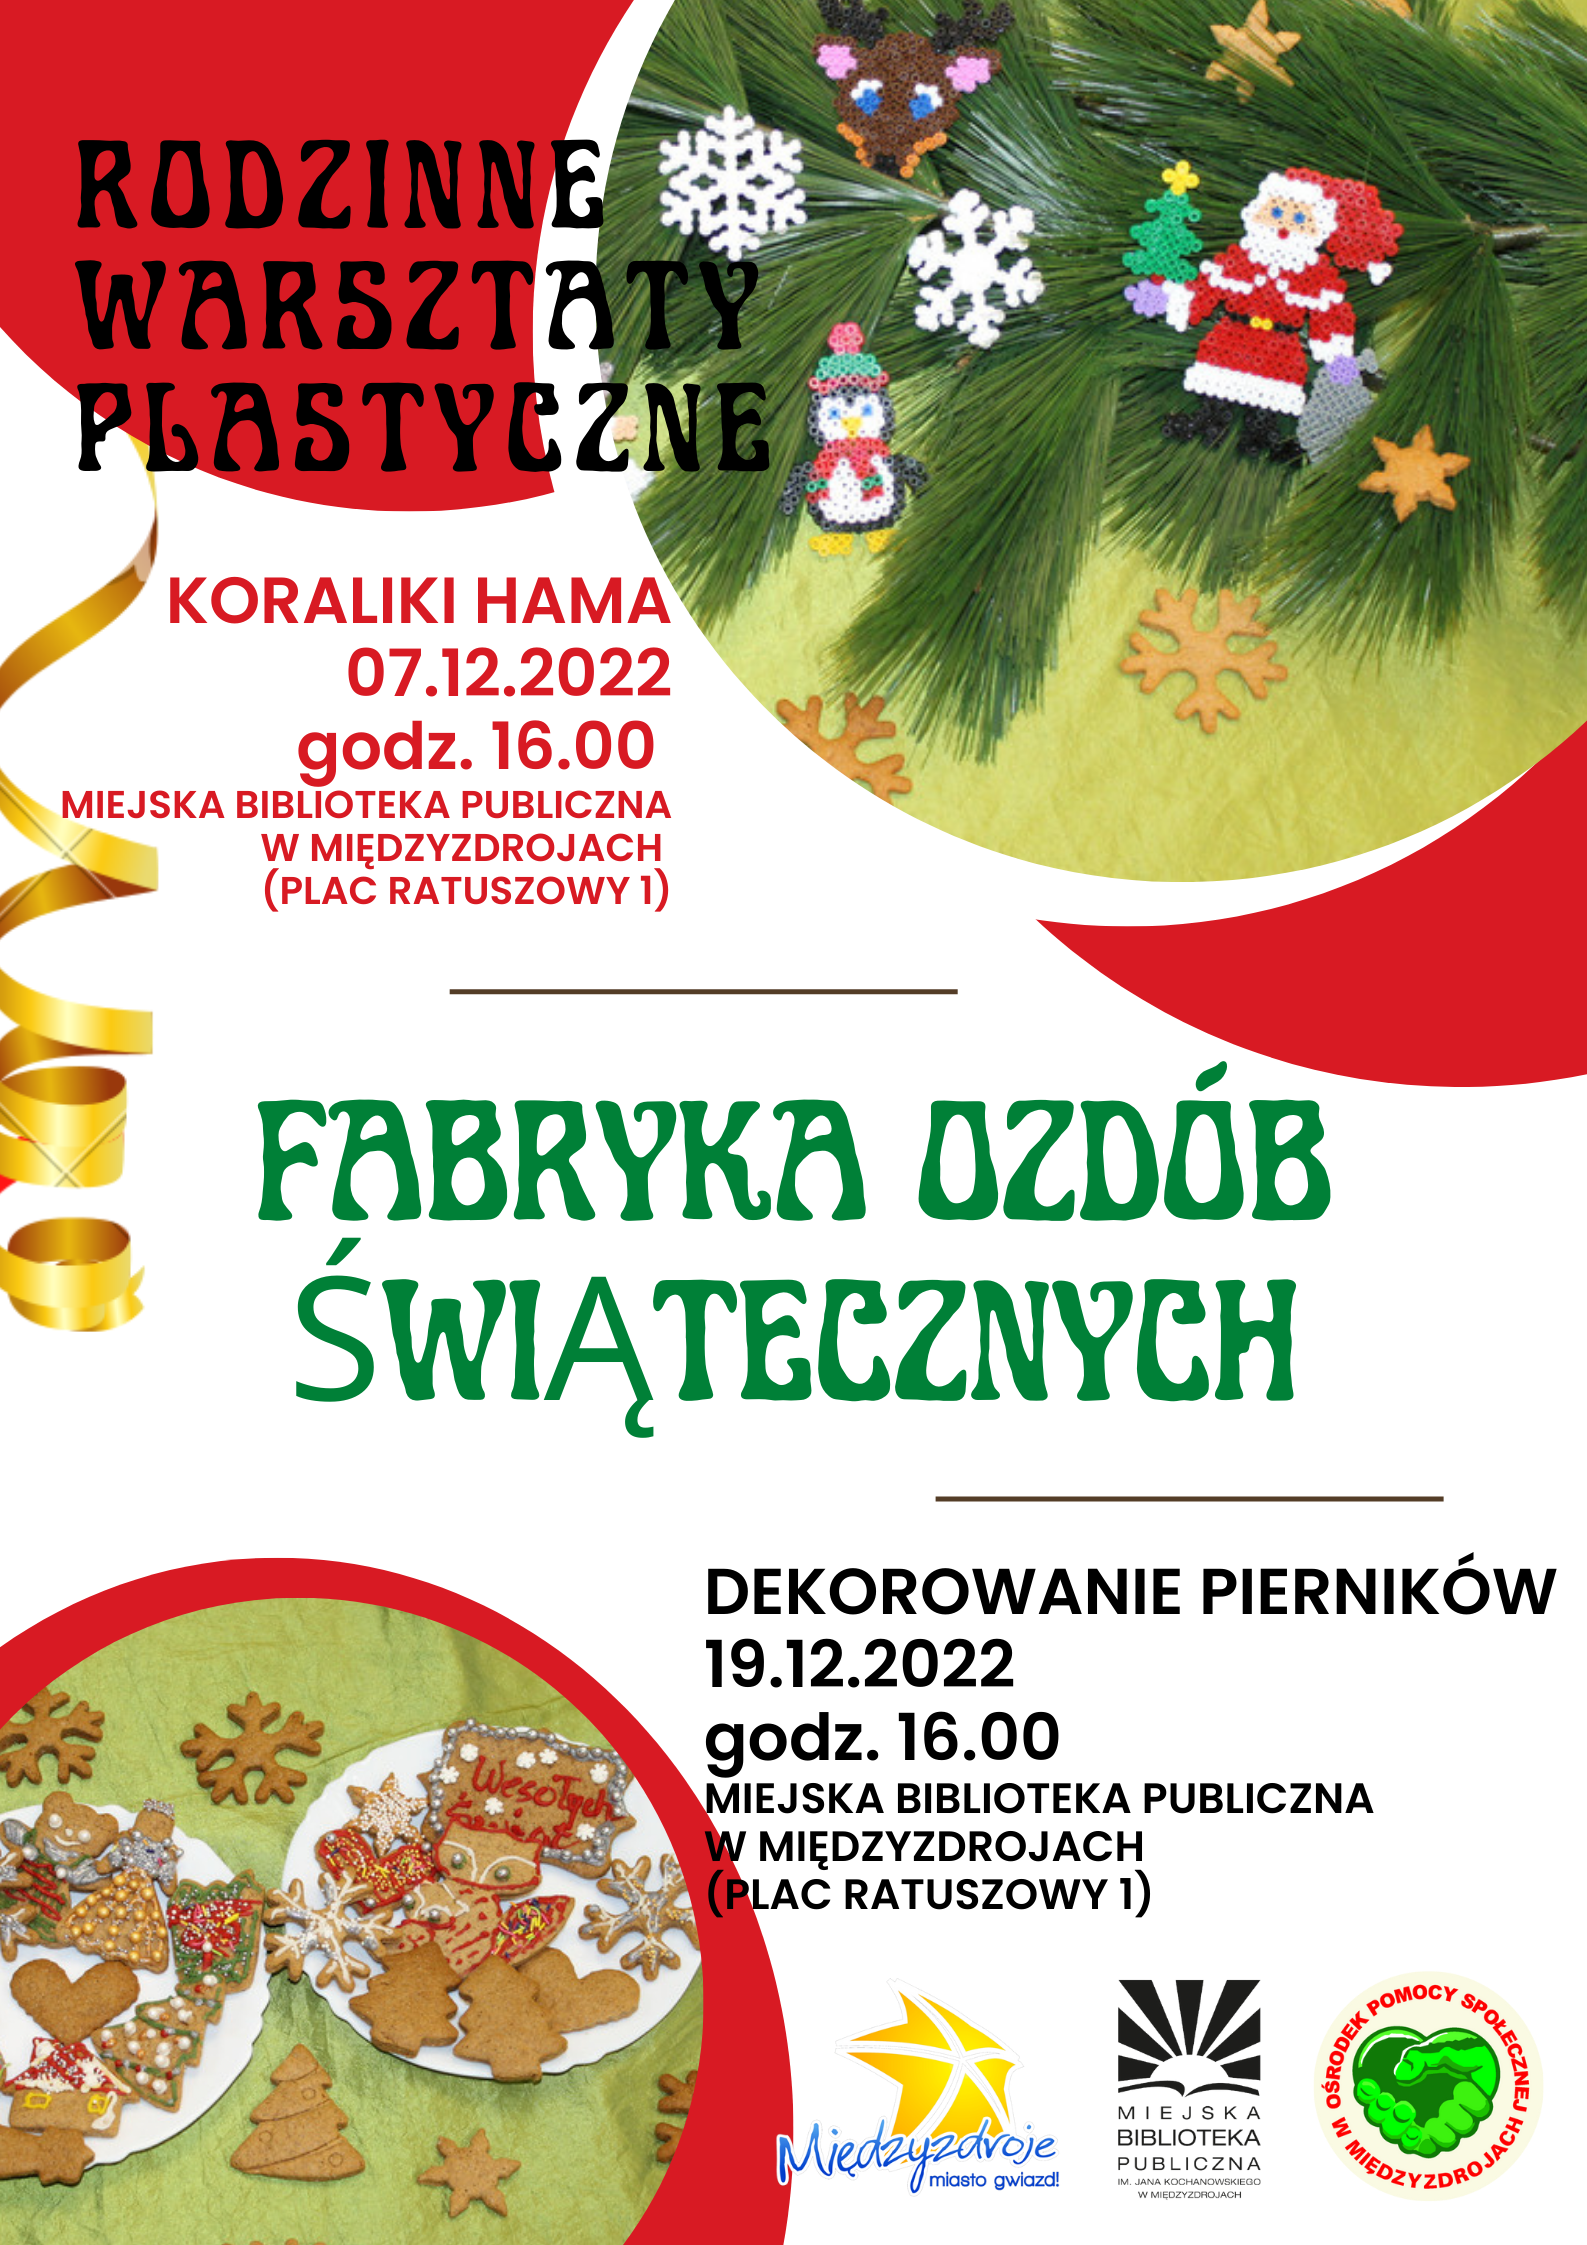 Rodzinne warsztaty plastyczne „Fabryka ozdób świątecznych” 7 grudnia 2022 r. oraz 19 grudnia 2022 r. - zapowiedź